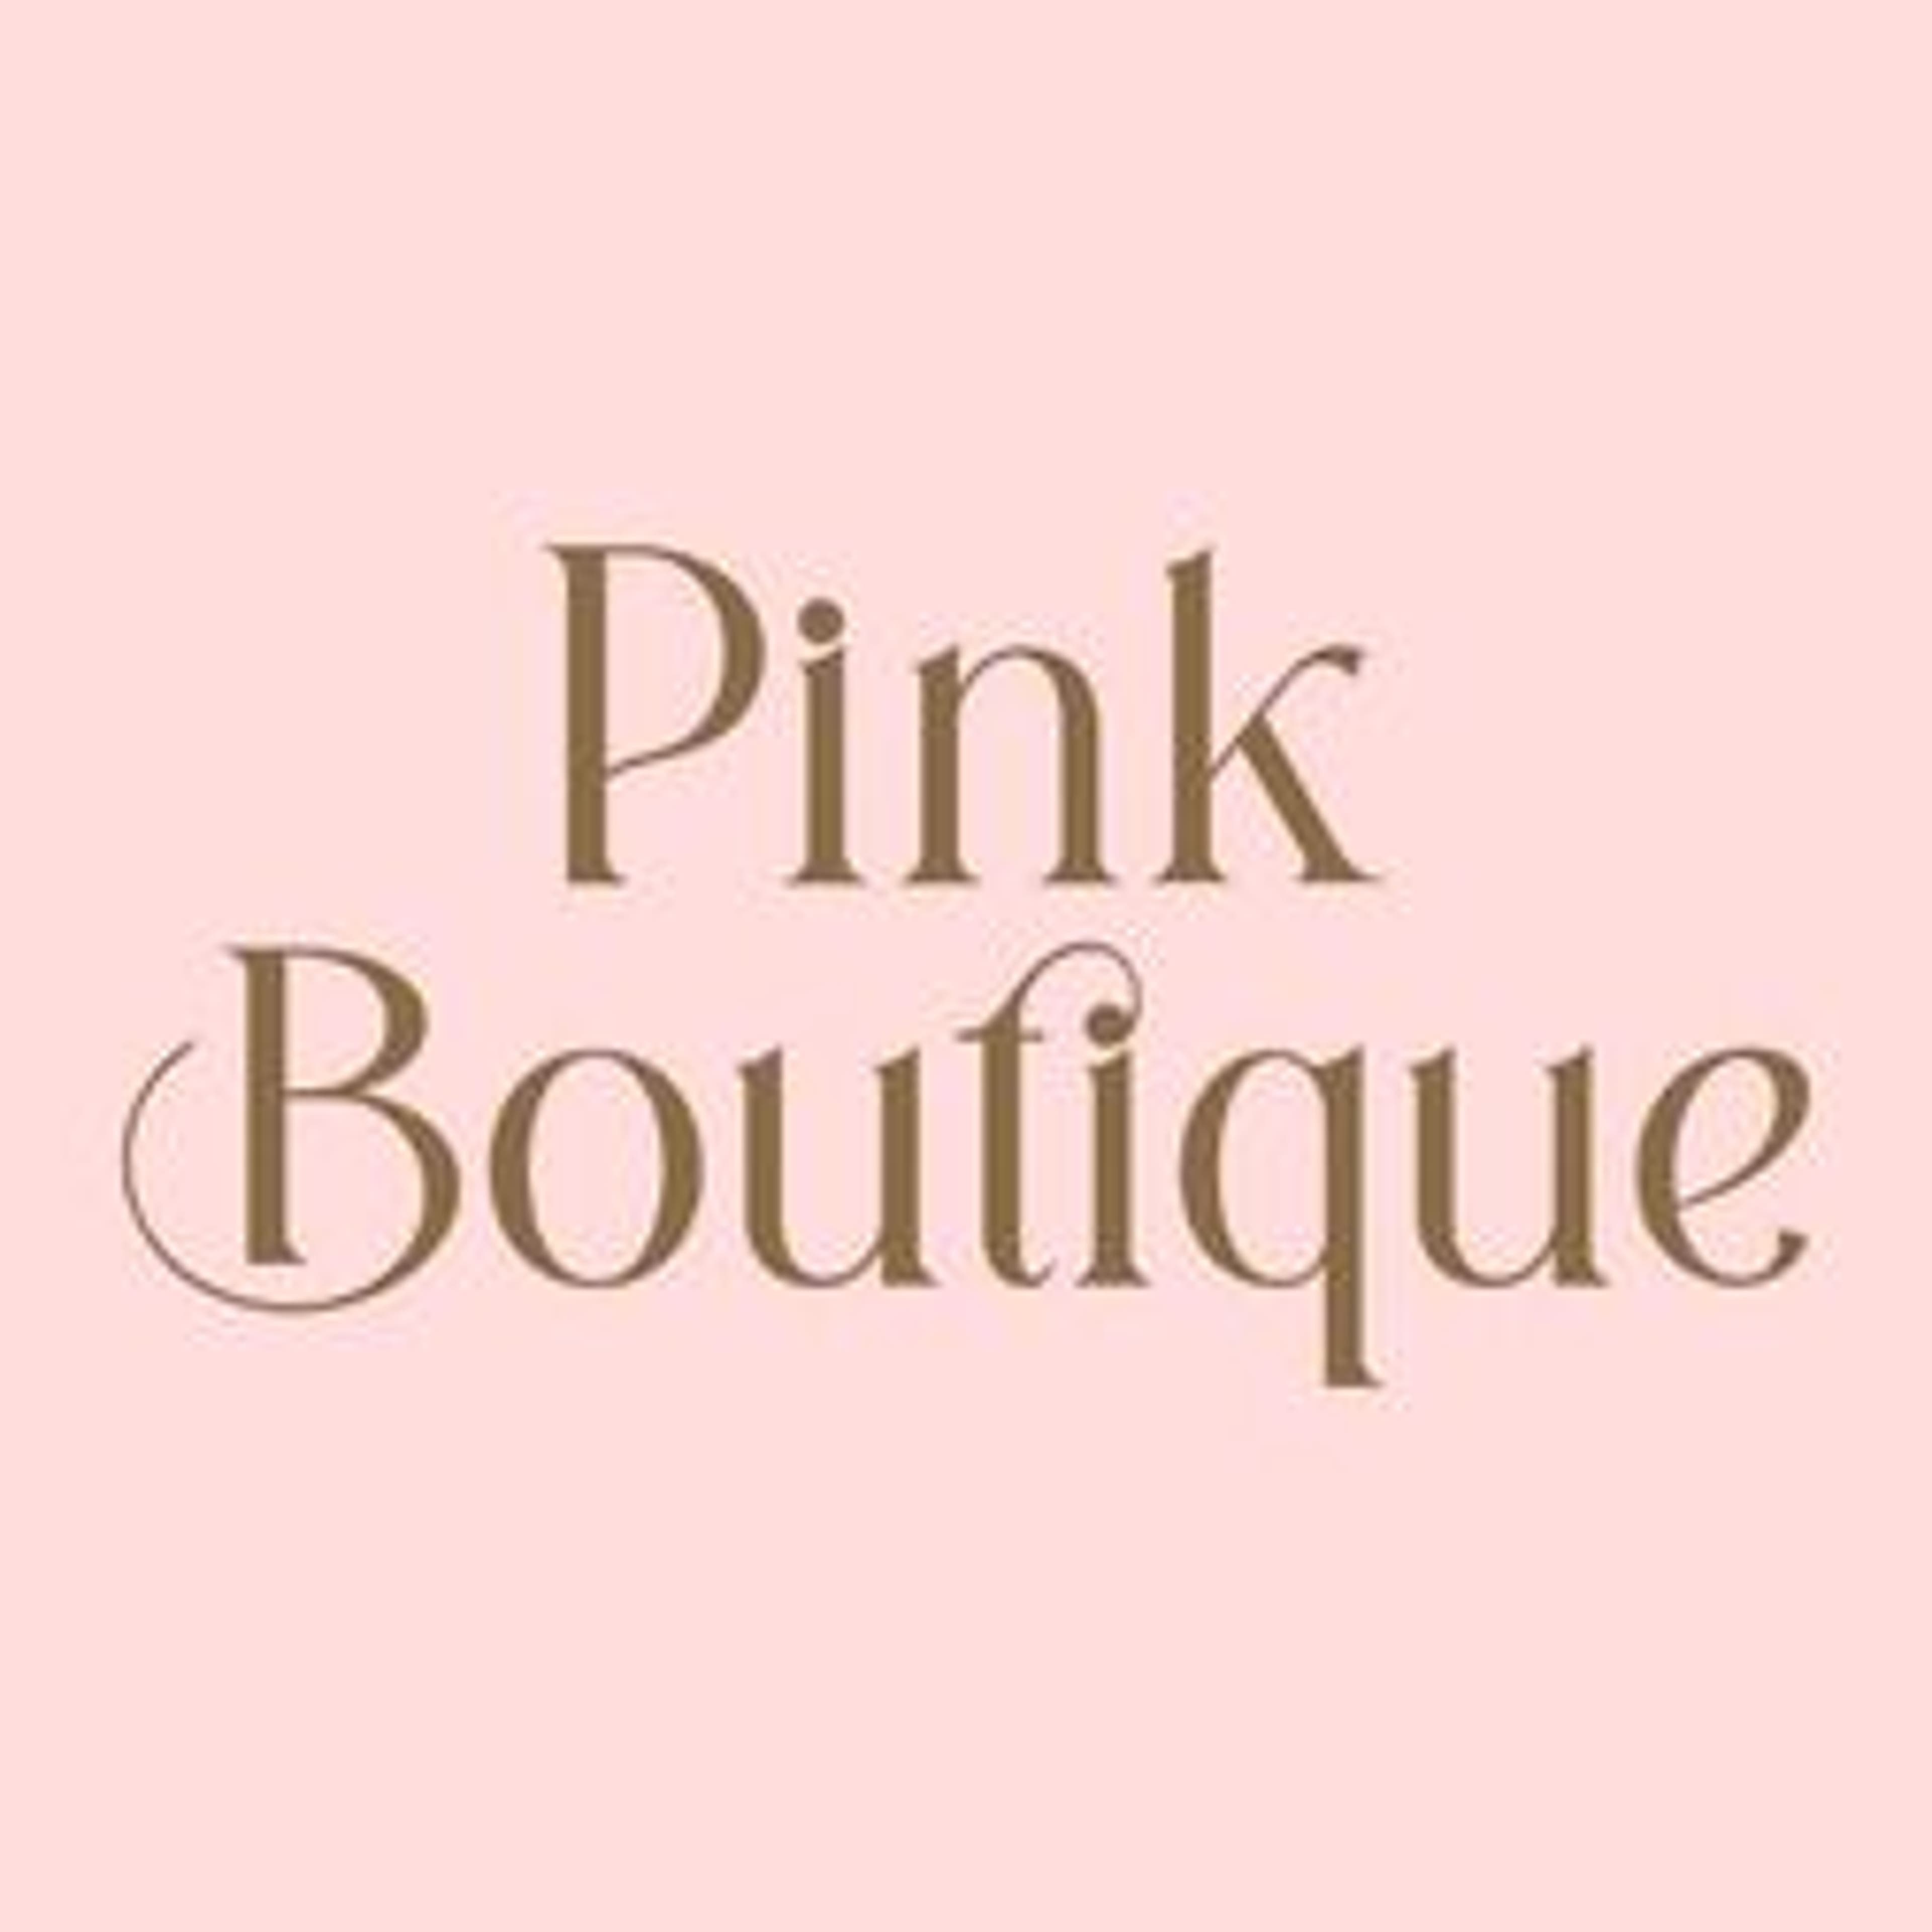  Pink Boutique 